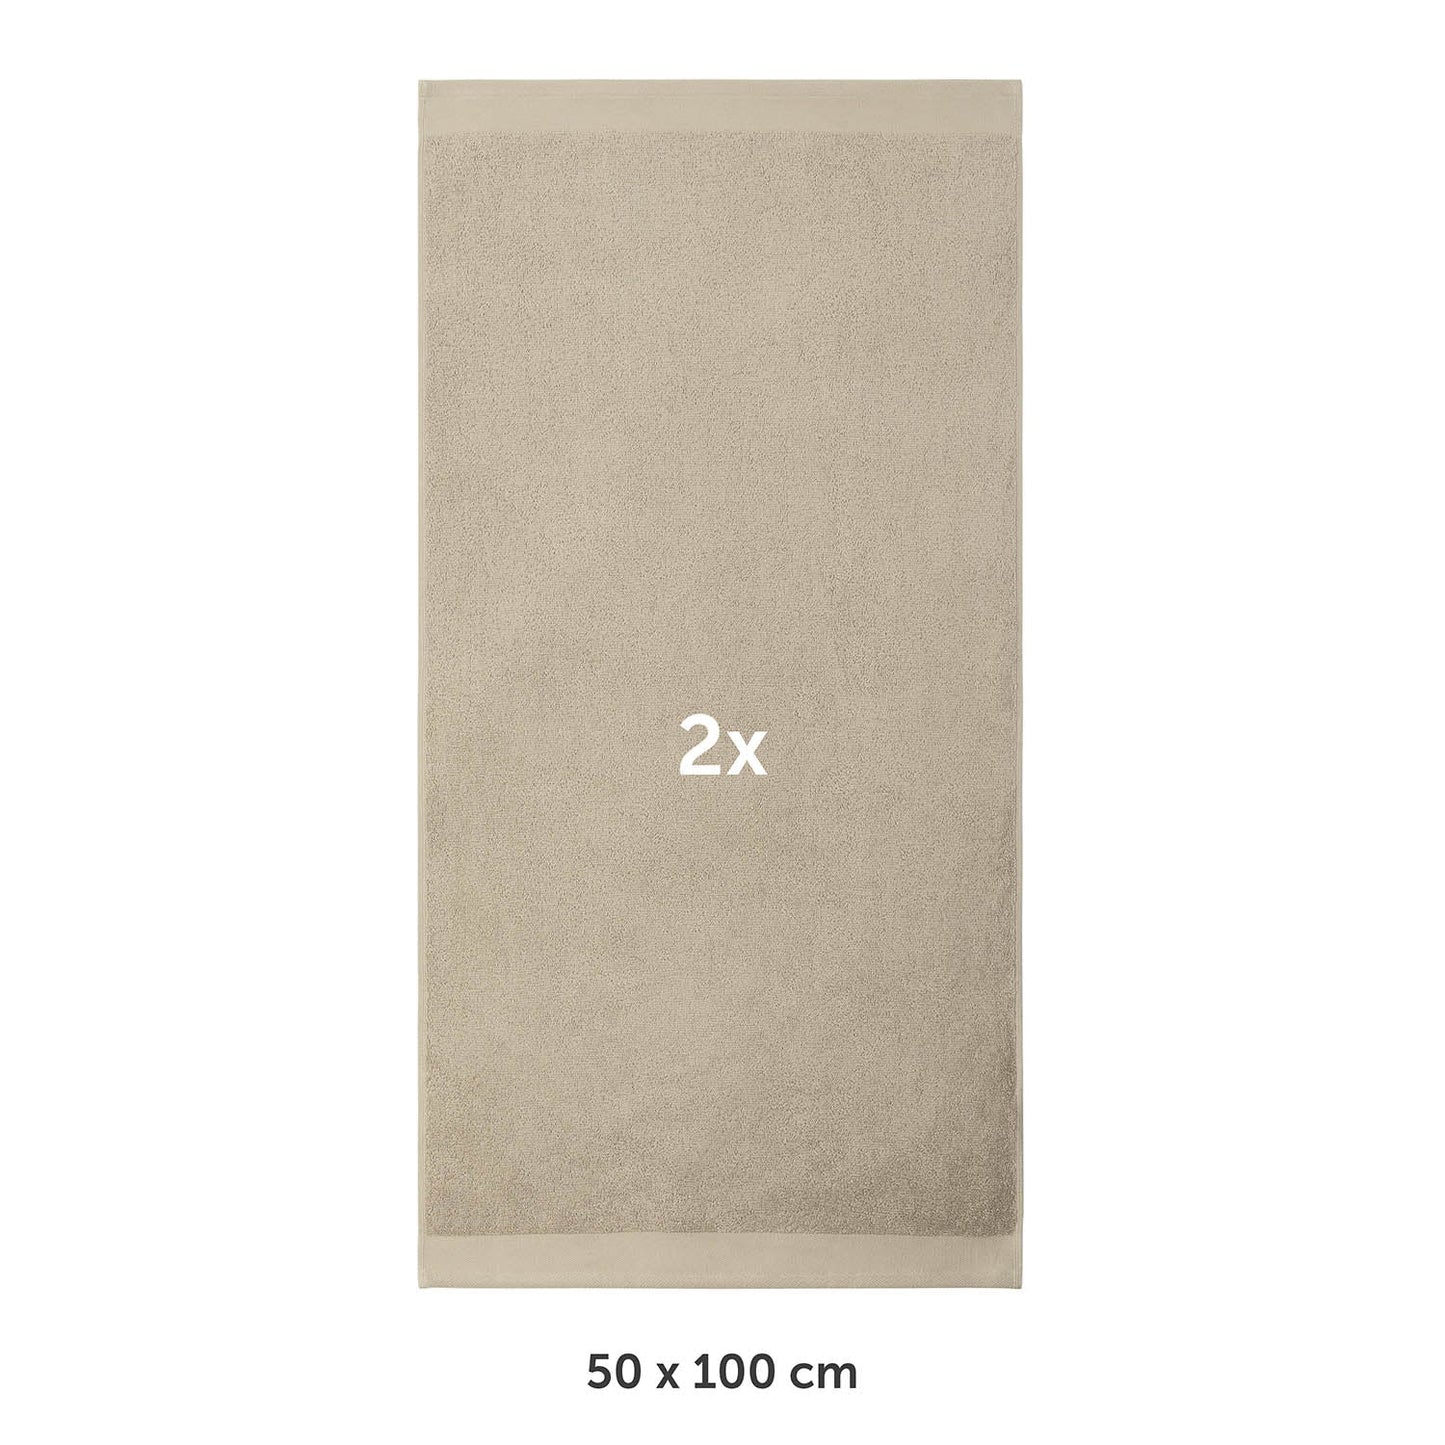 Handtuch flach ausgebreitet mit Markierung 2x und Maßangabe 50 x 100 cm in weißer Schrif